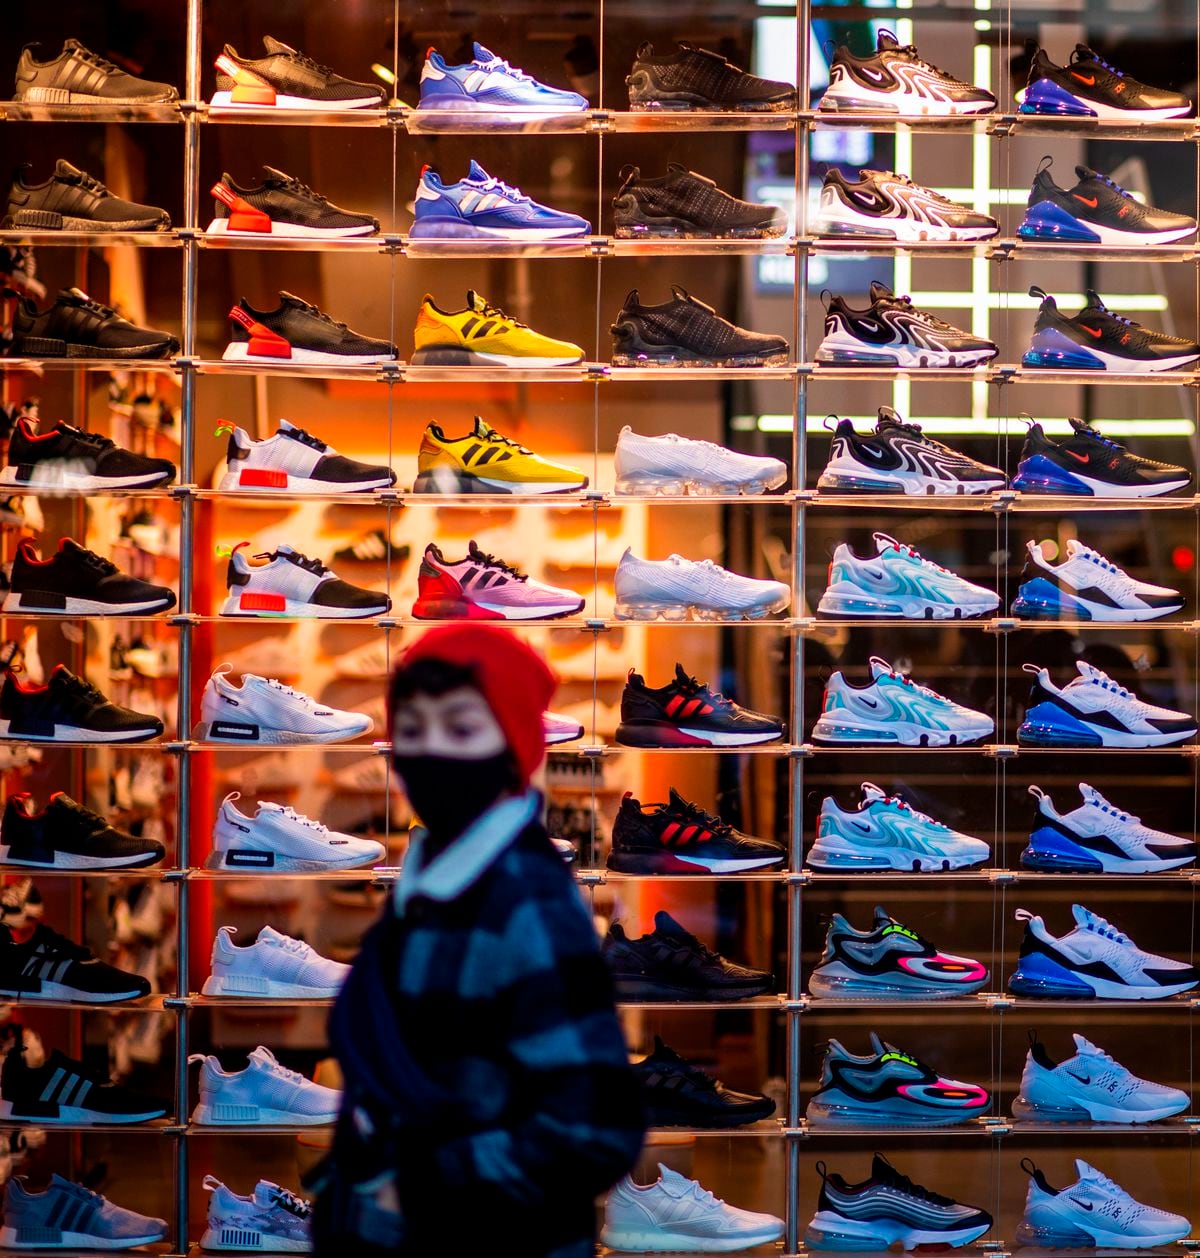 teoría doloroso interno Sneakers': Las zapatillas se convierten en un activo de inversión para  muchos jóvenes | Negocios | EL PAÍS